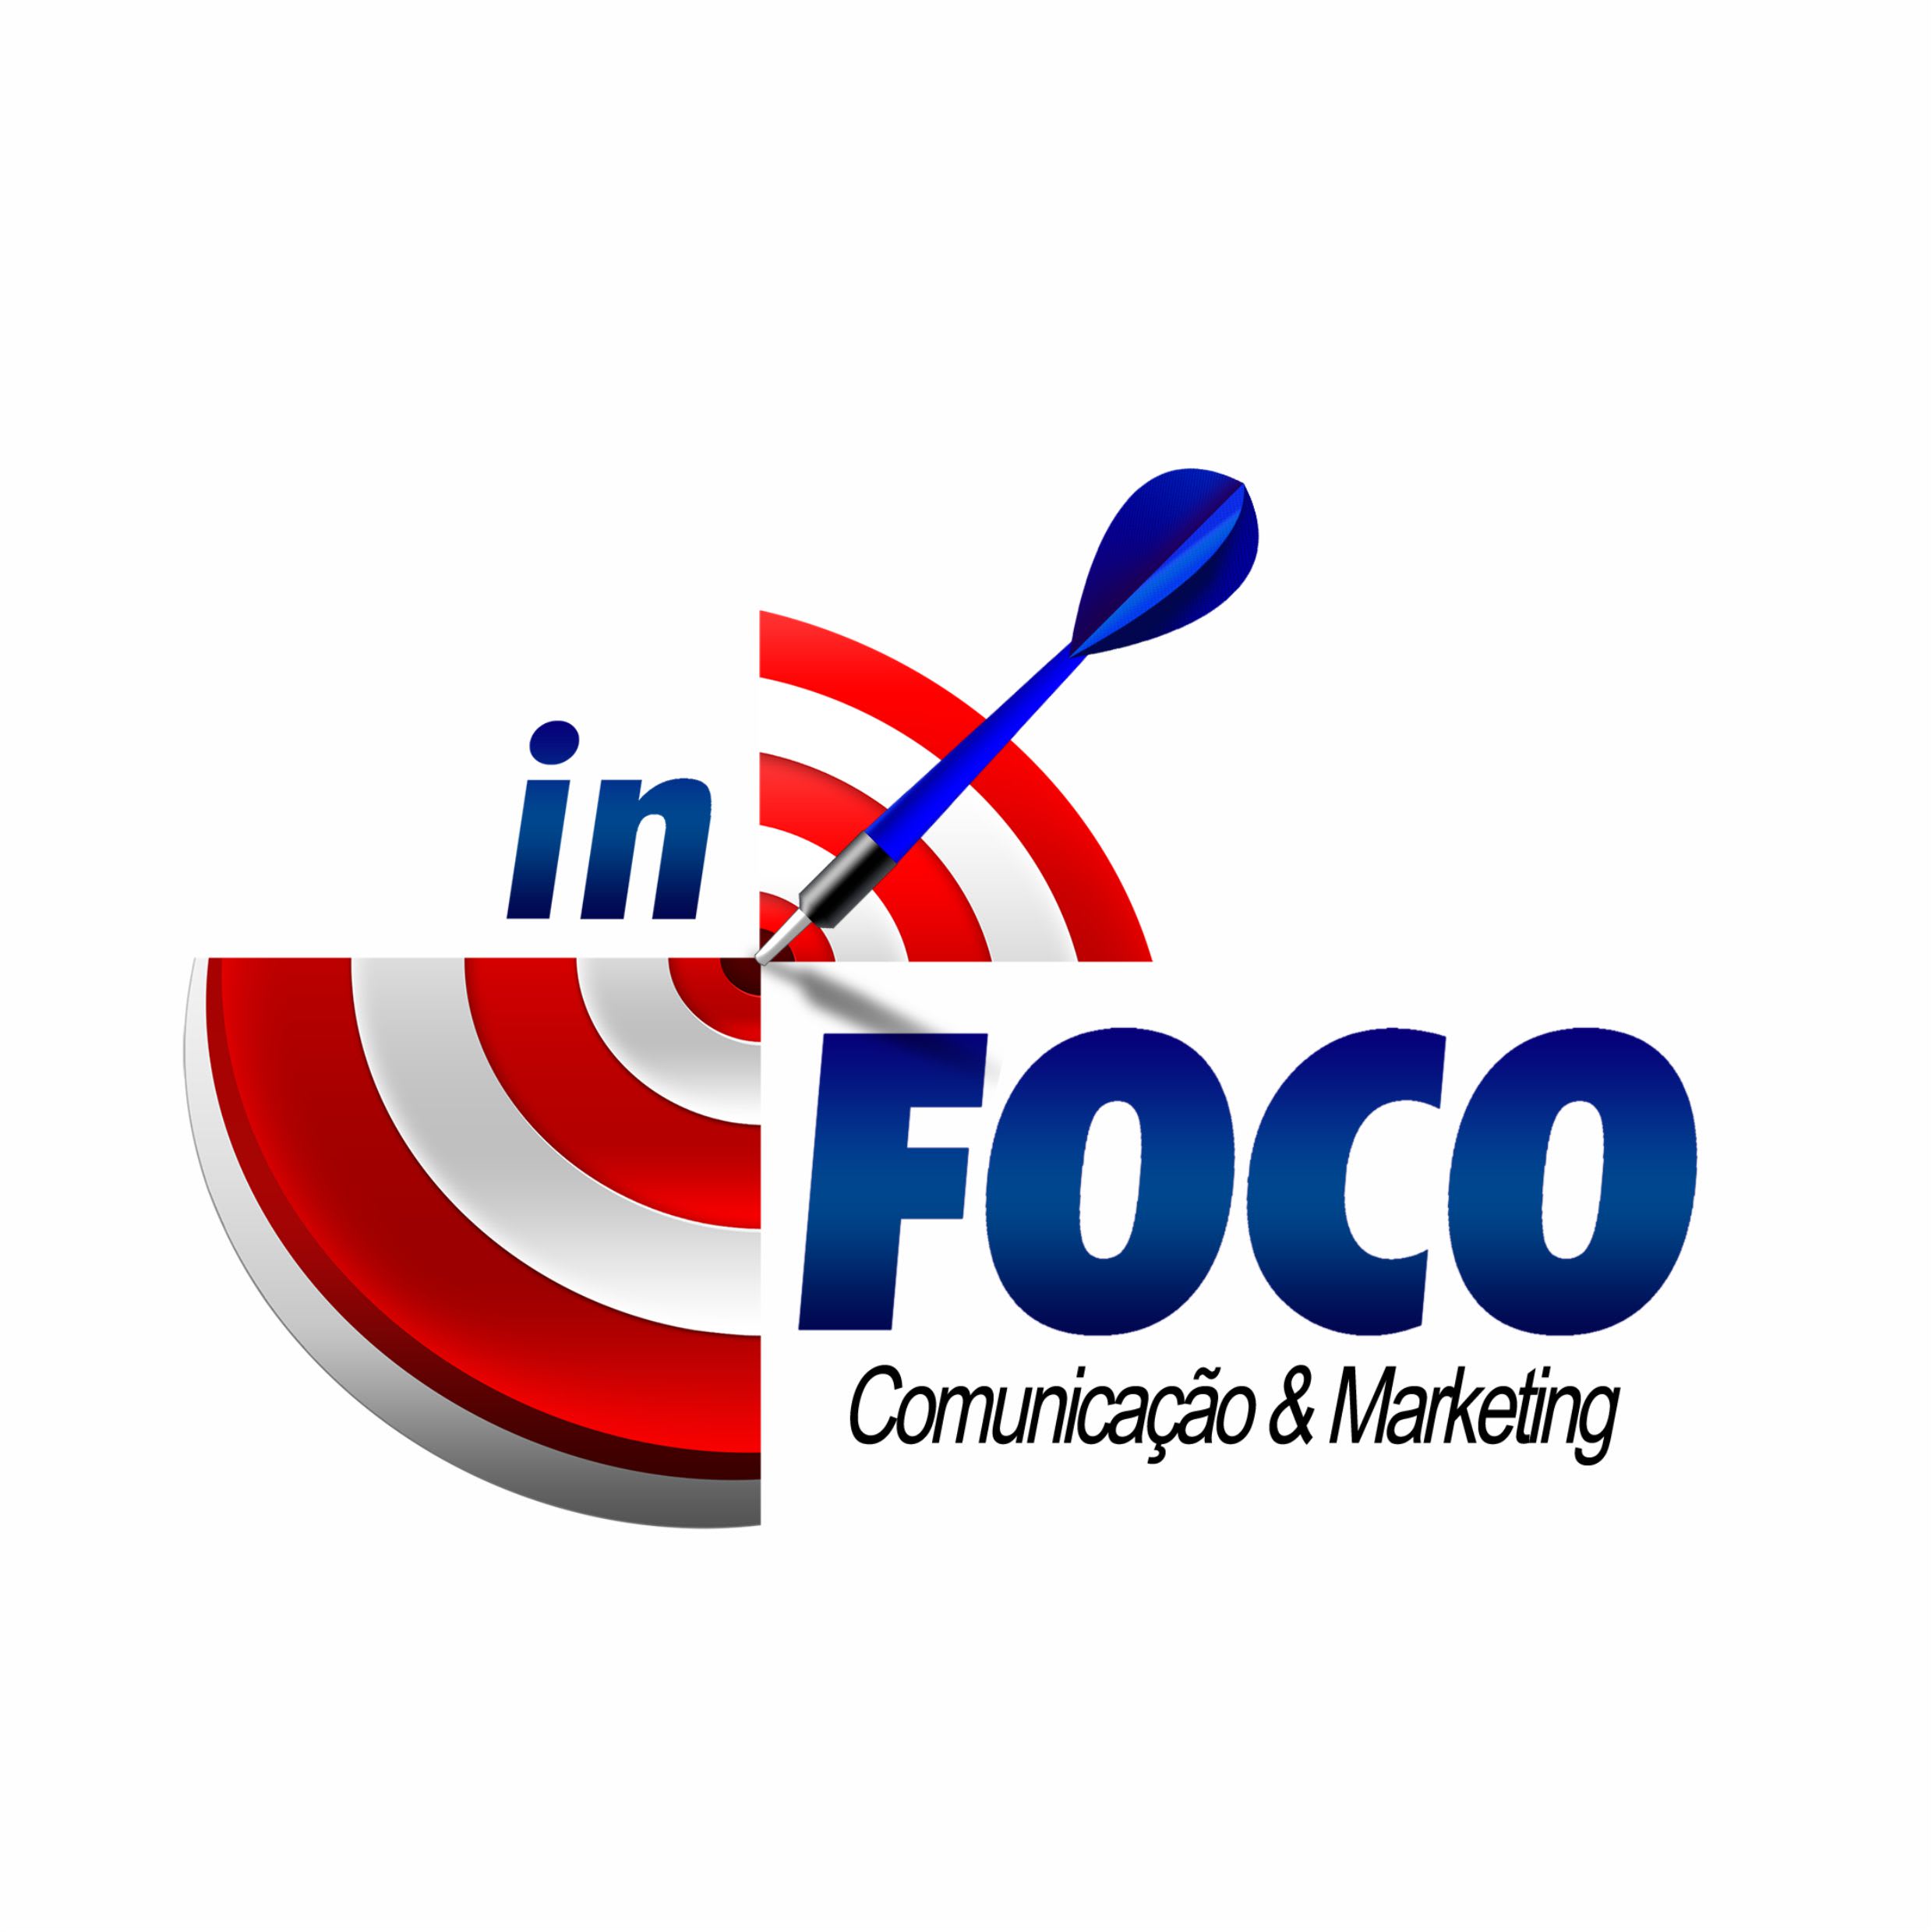 InFoco Comunicação & Marketing